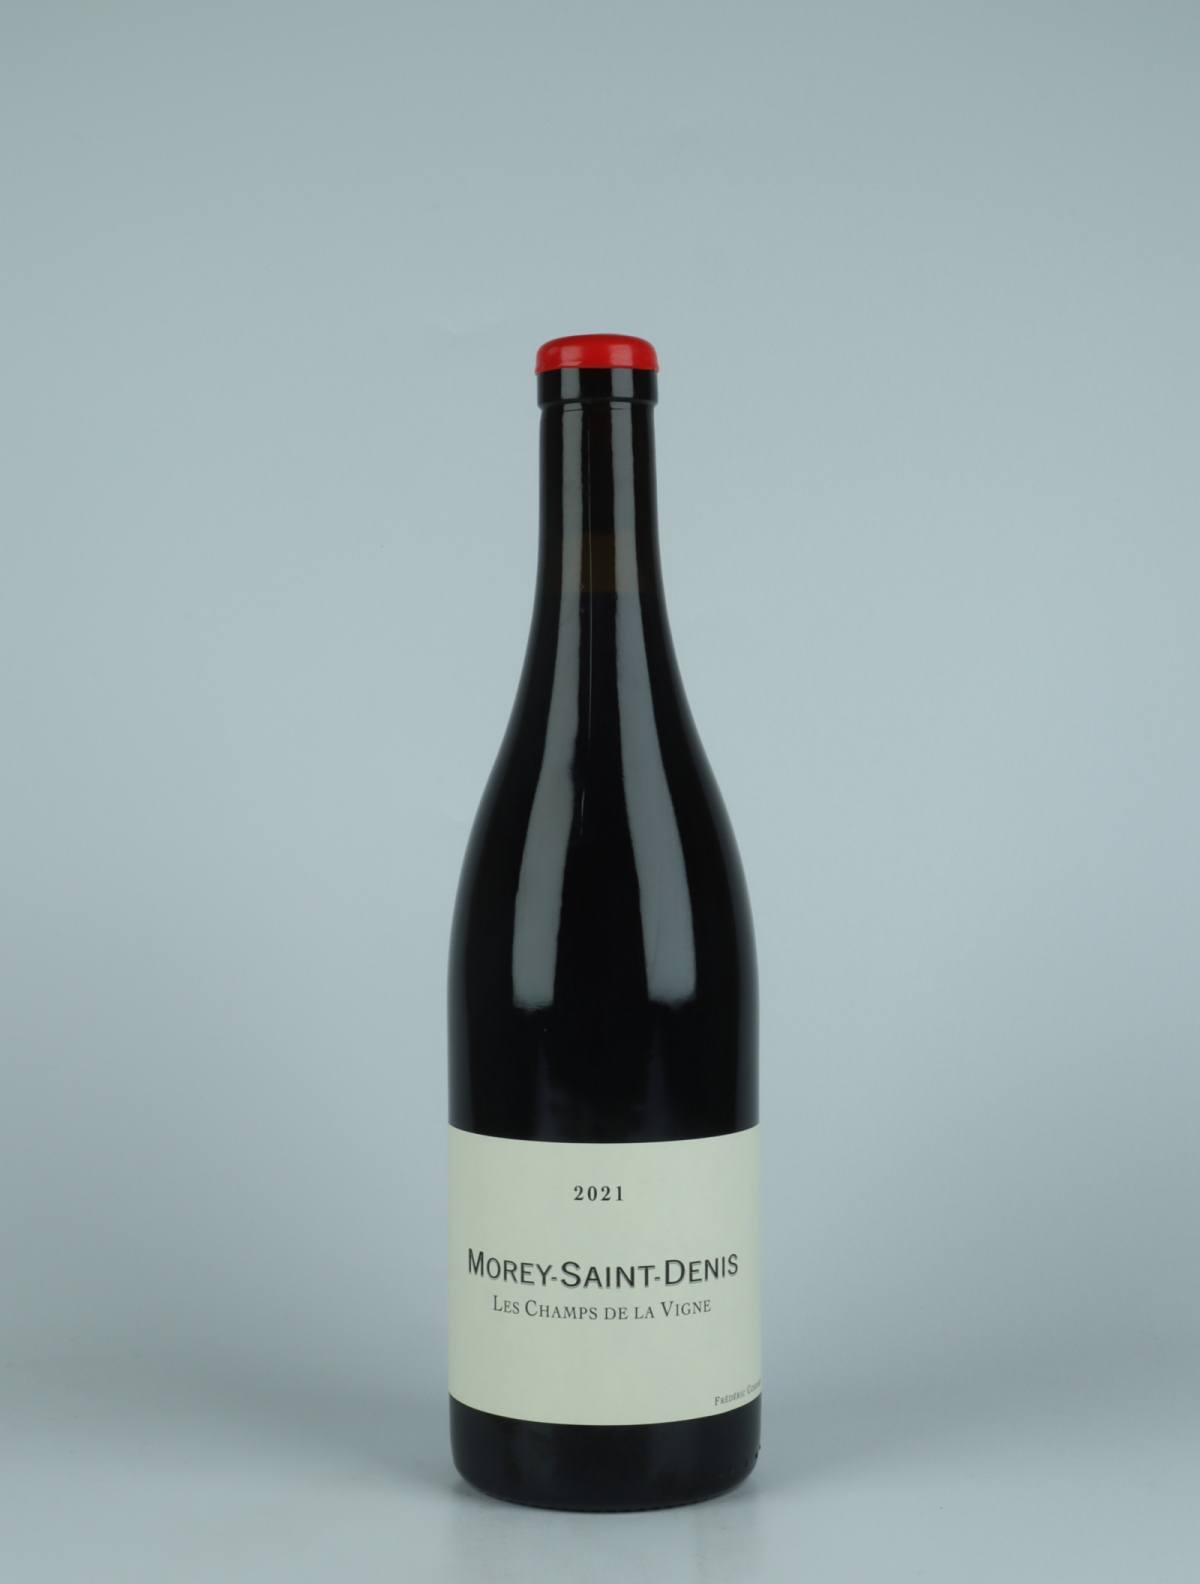 A bottle 2021 Morey Saint Denis - Les Champs de la Vigne - Qvevris Red wine from Frédéric Cossard, Burgundy in France